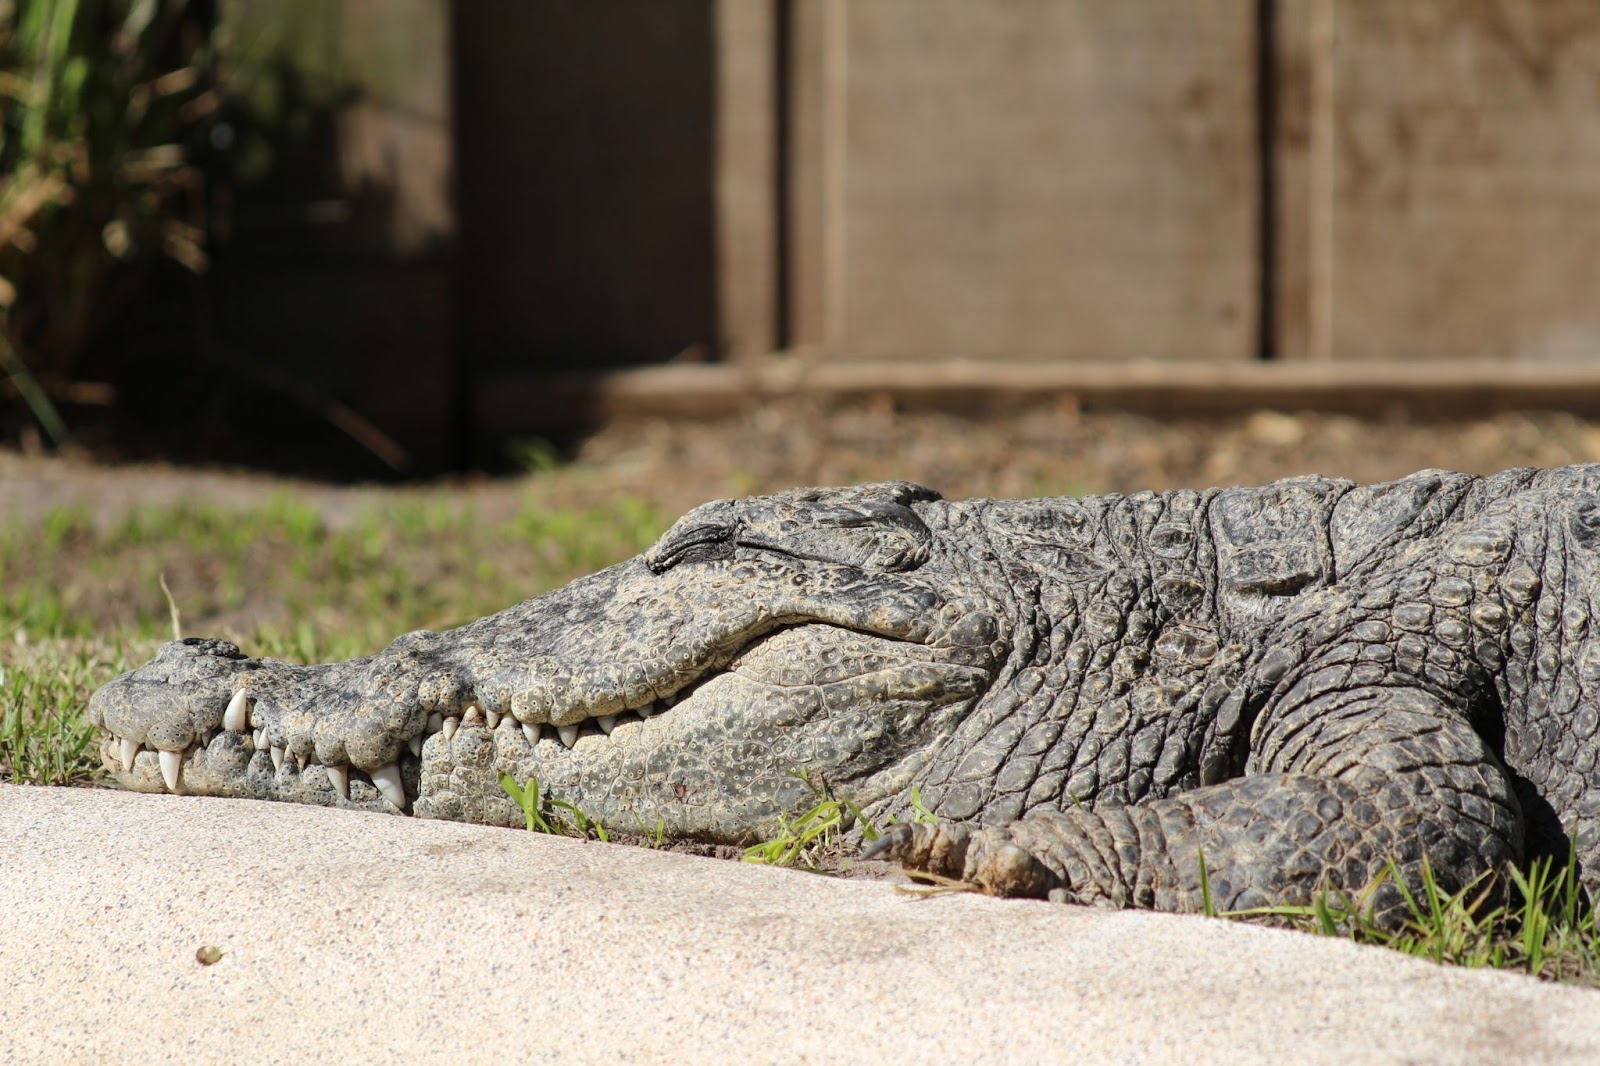 A crocodile basks in the sun at Wild Florida